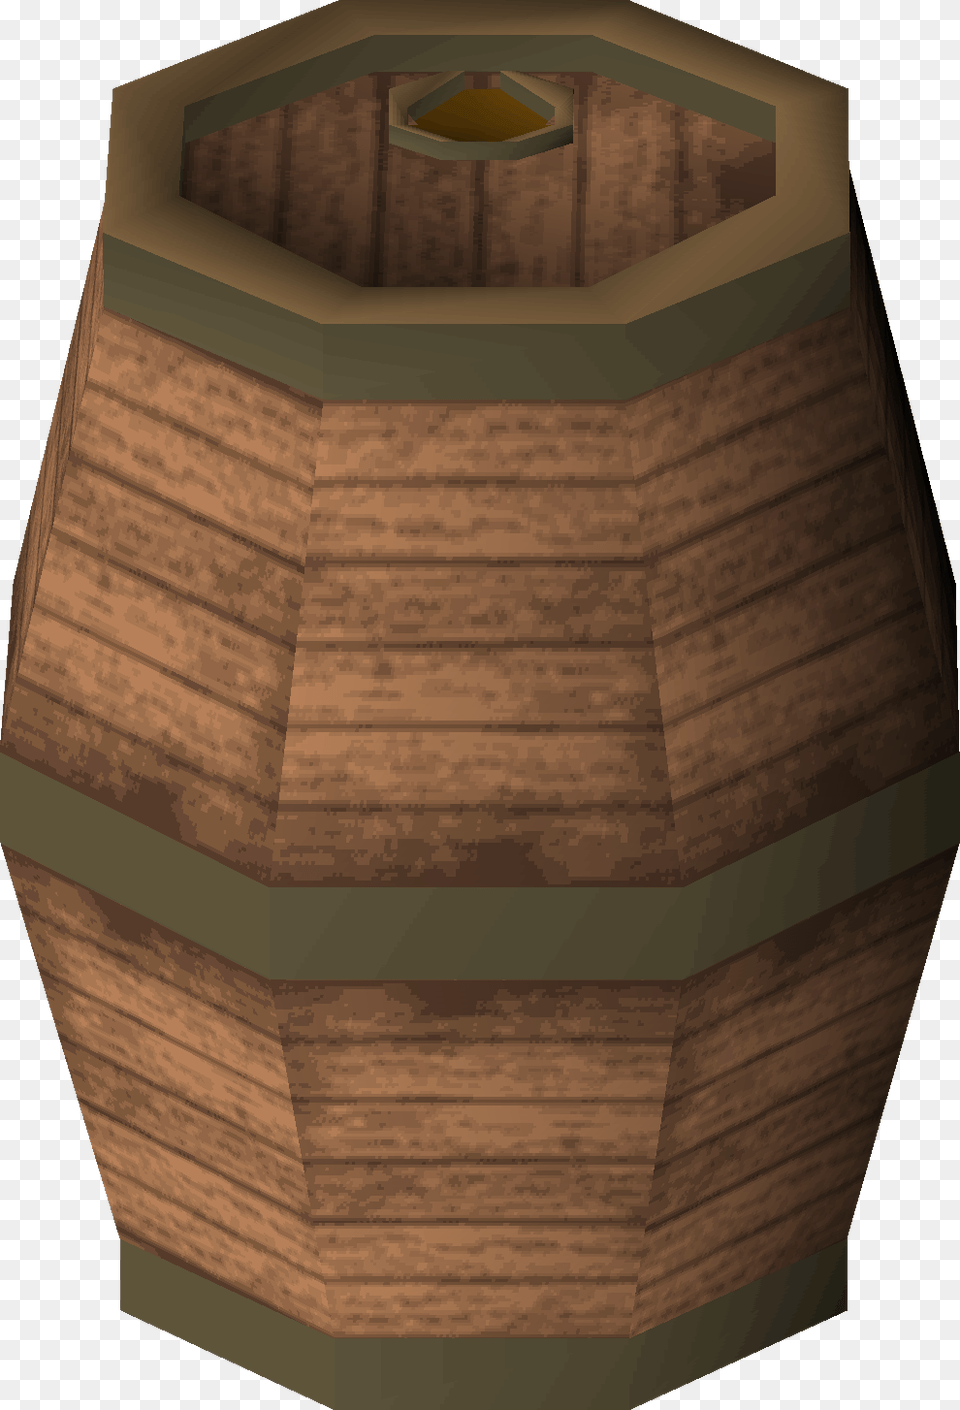 Keg Of Beer Detail Beer, Wood, Barrel Png Image